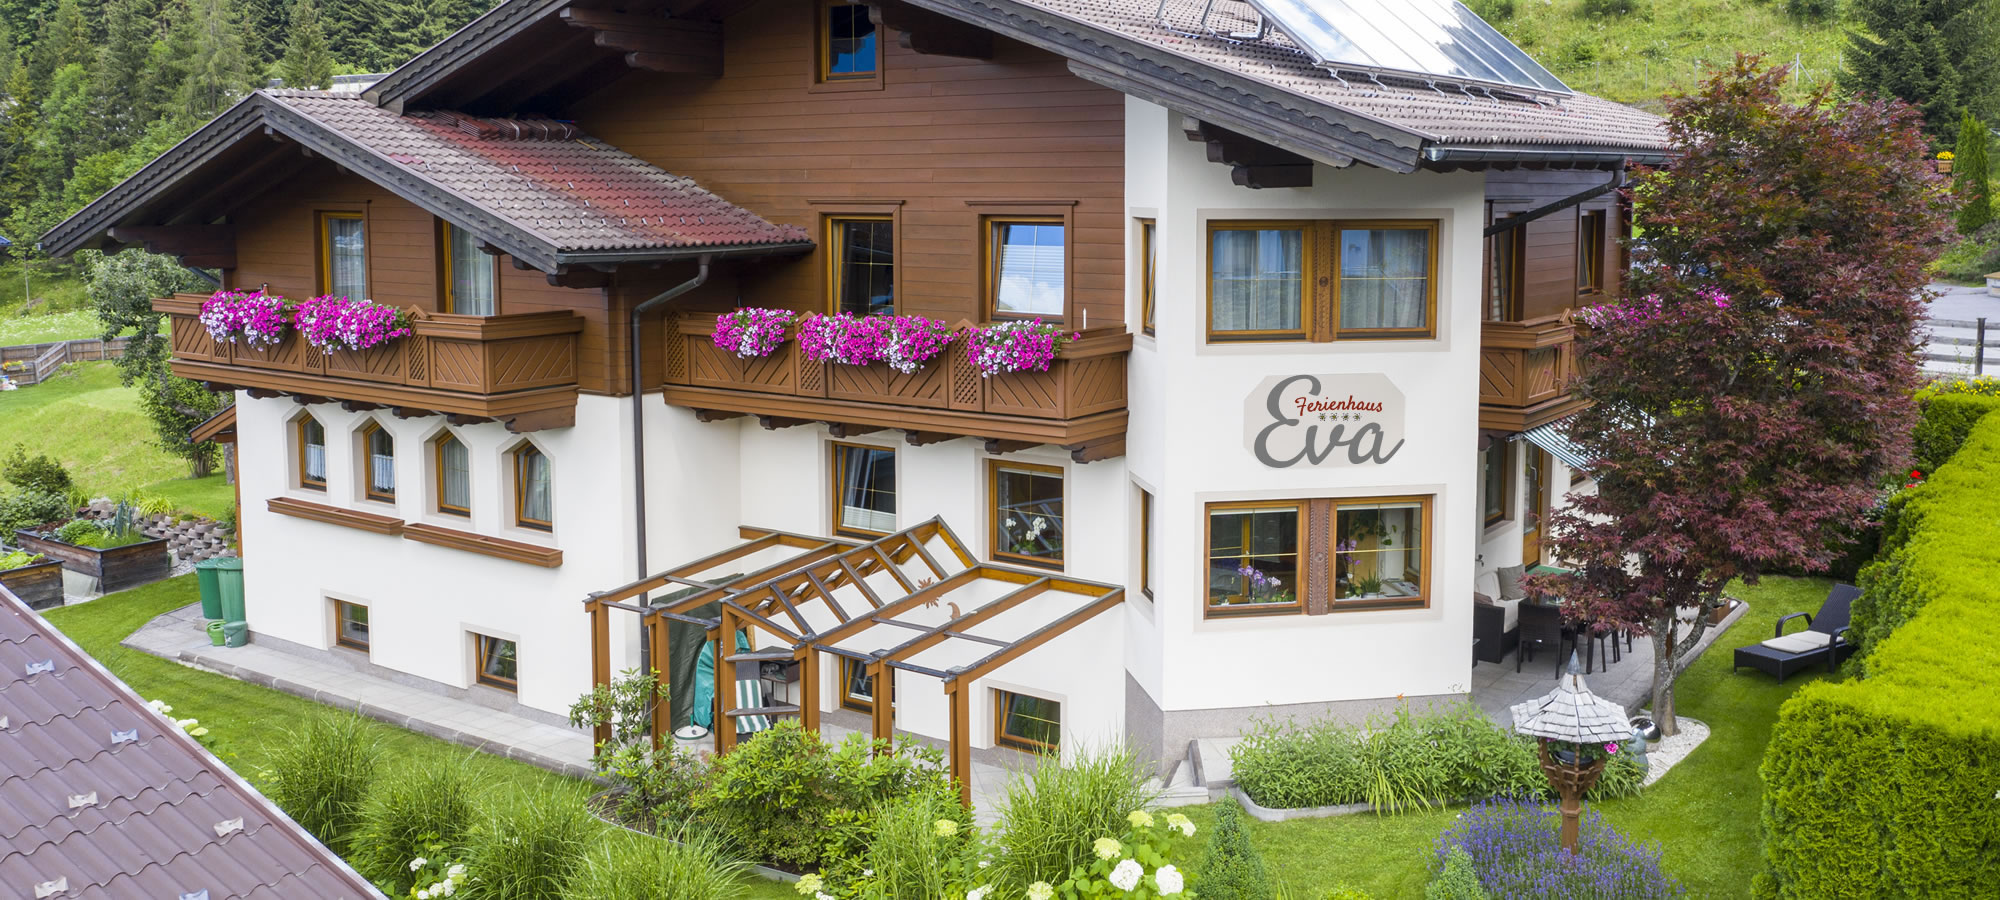 Sommerurlaub im Ferienhaus Eva in Flachau, Salzburger Land